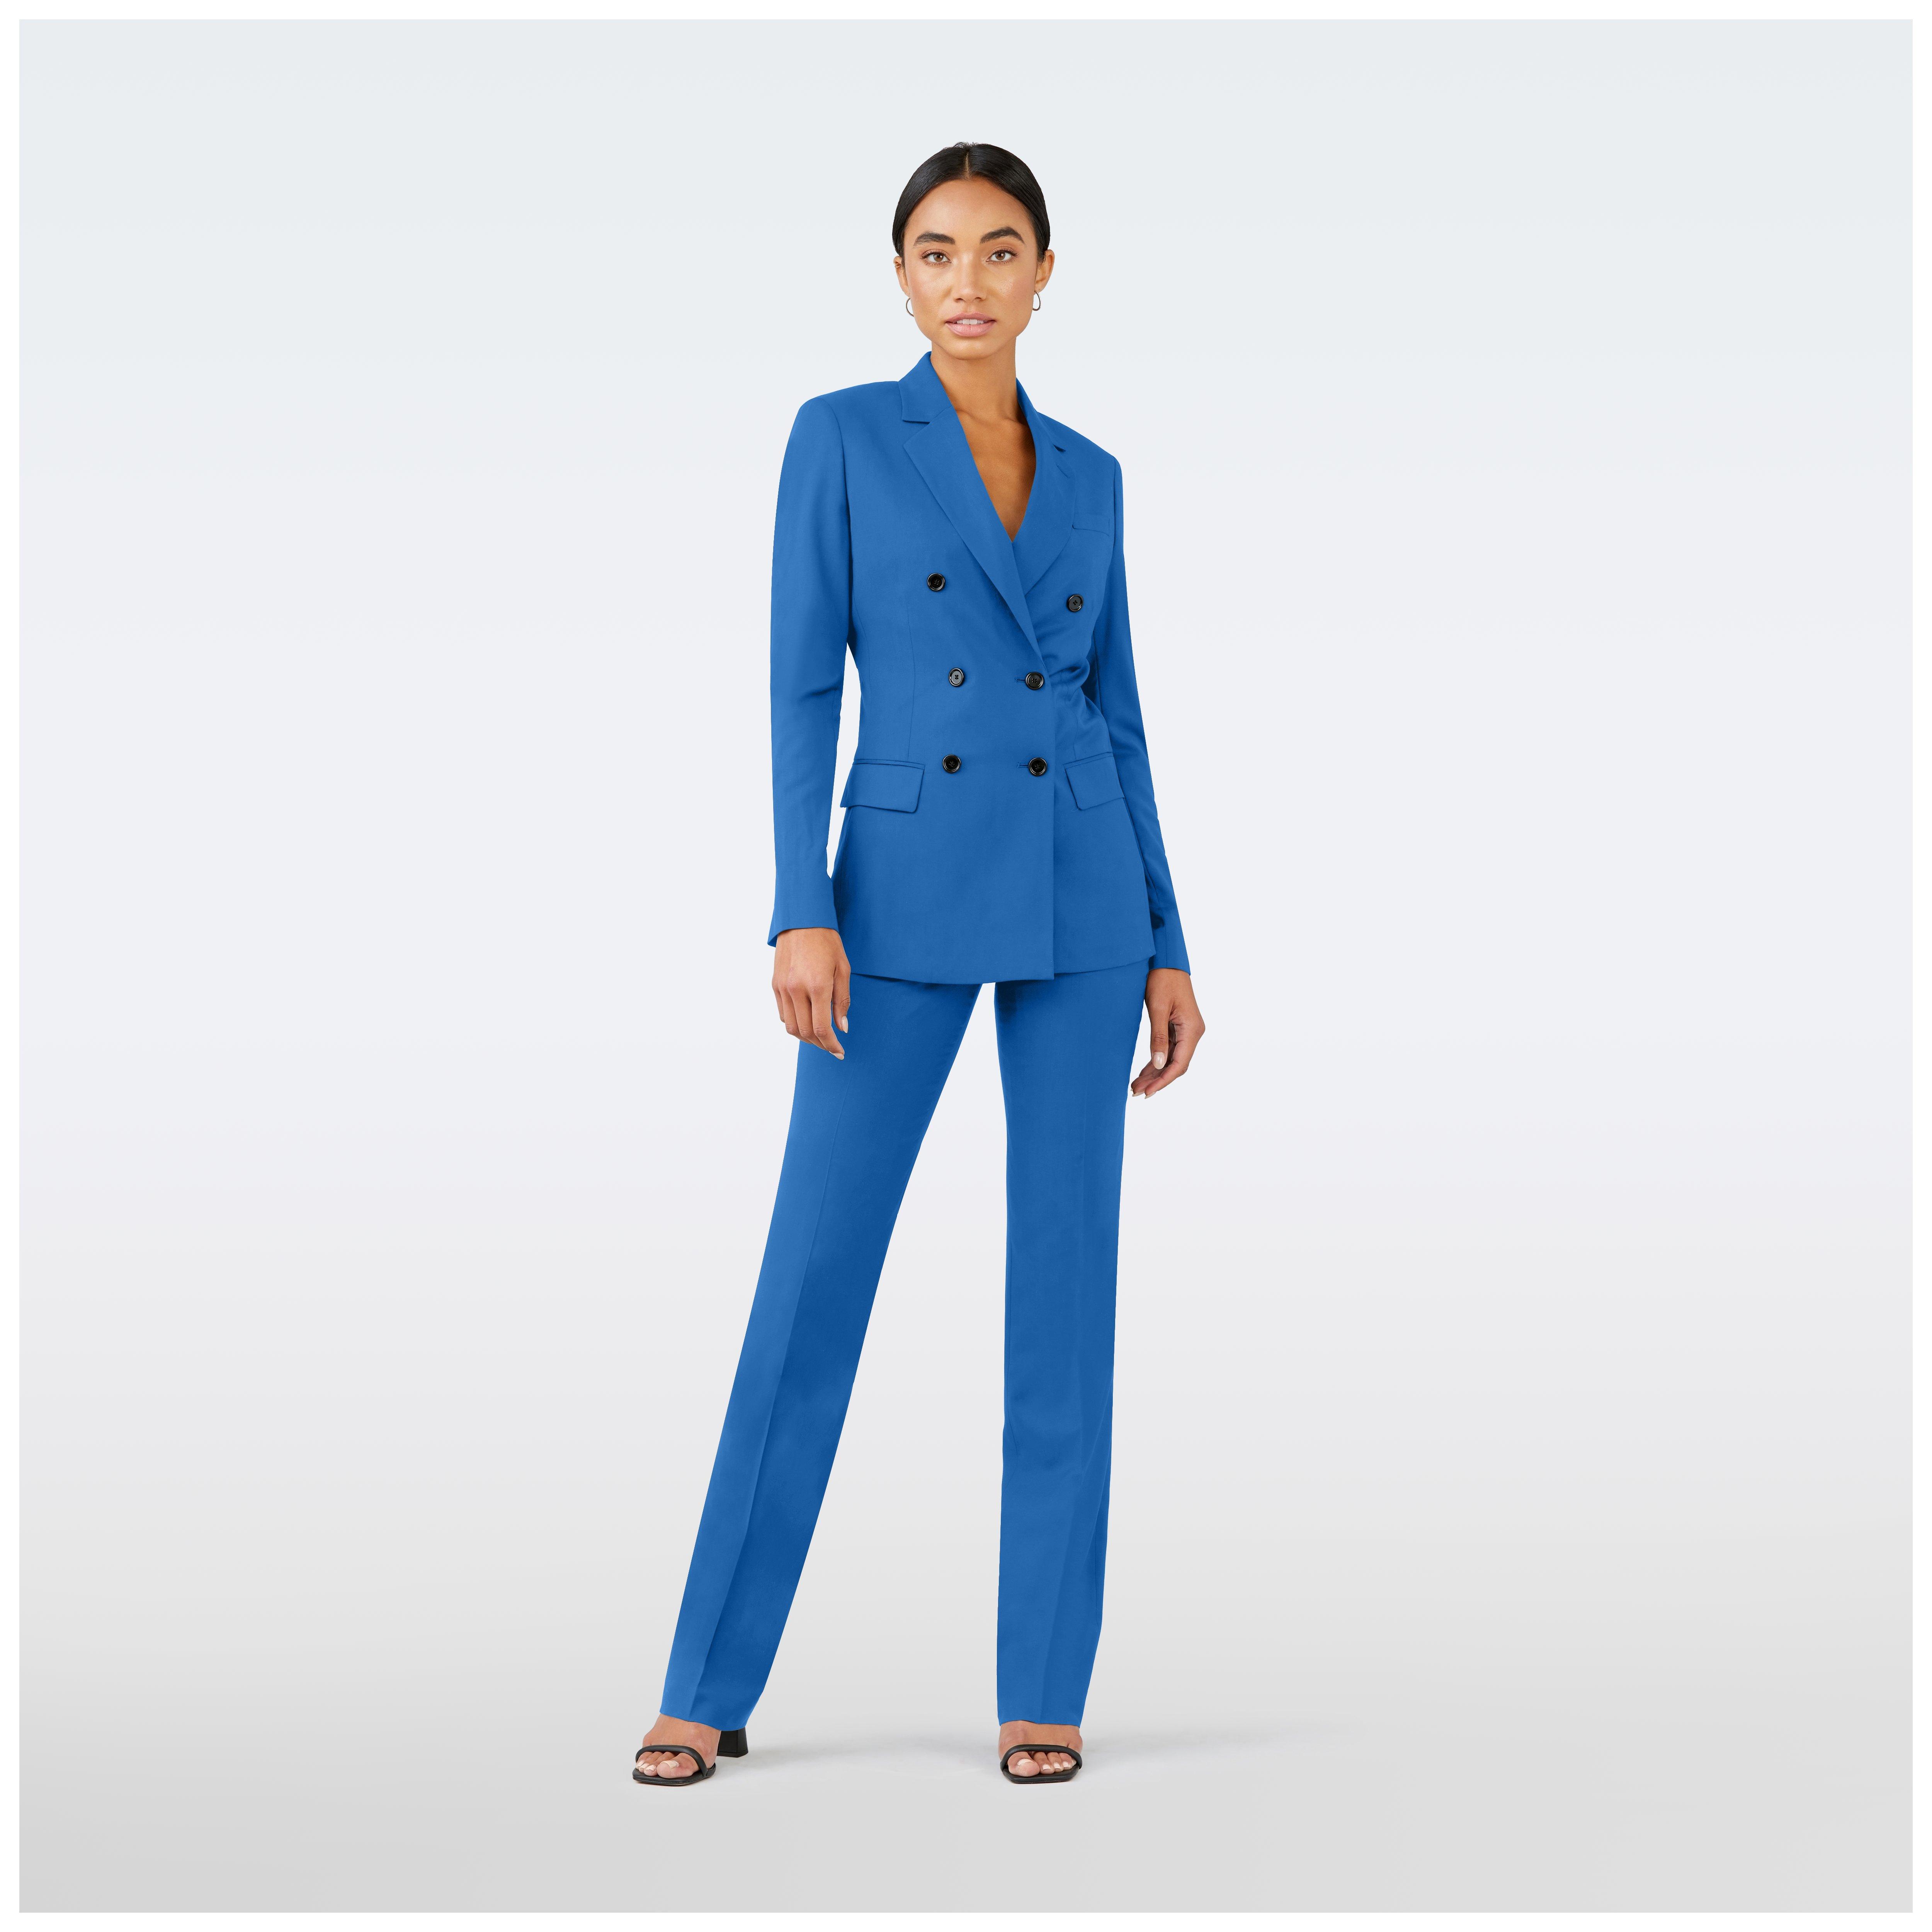 Harrogate Bright Blue Suit